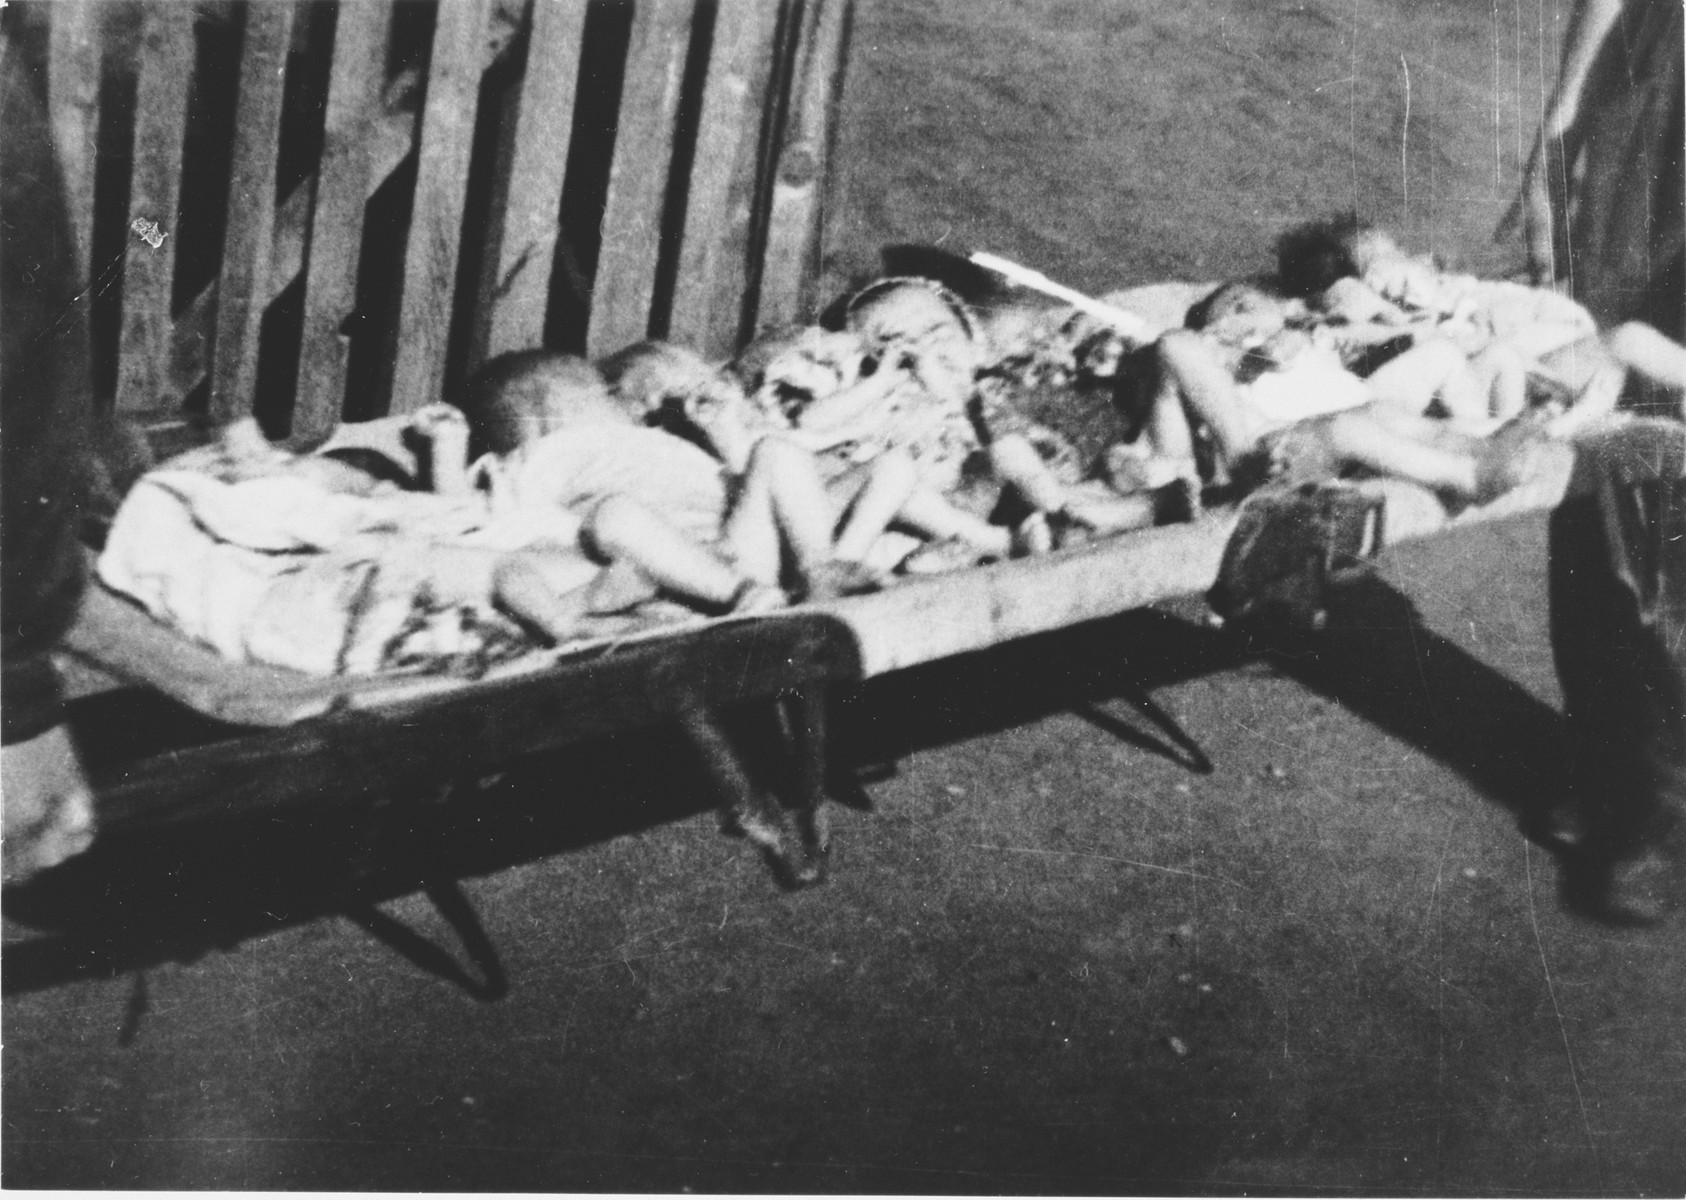 Preminula djeca leže na nosilima, prije nego što su ih zakopali u masovnu grobnicu unutar logora.